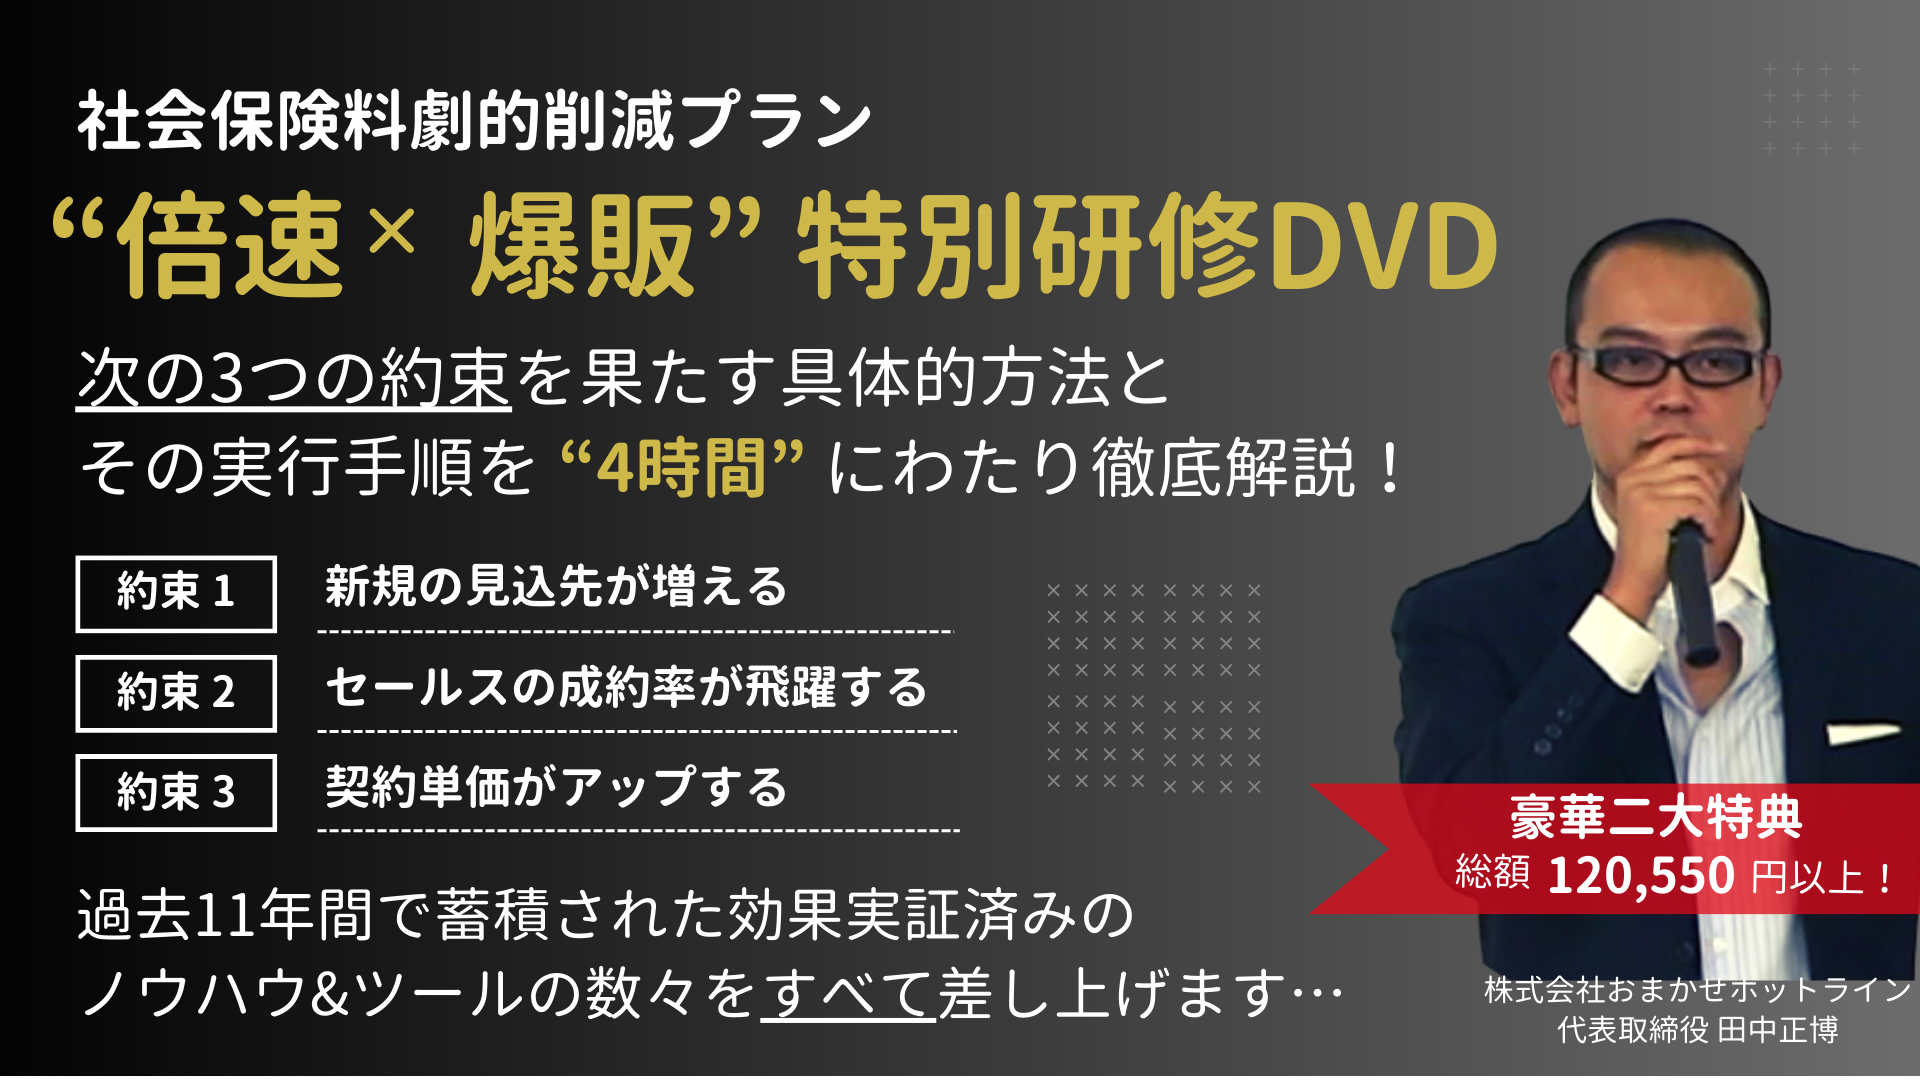 “倍速×爆販”特別研修DVD